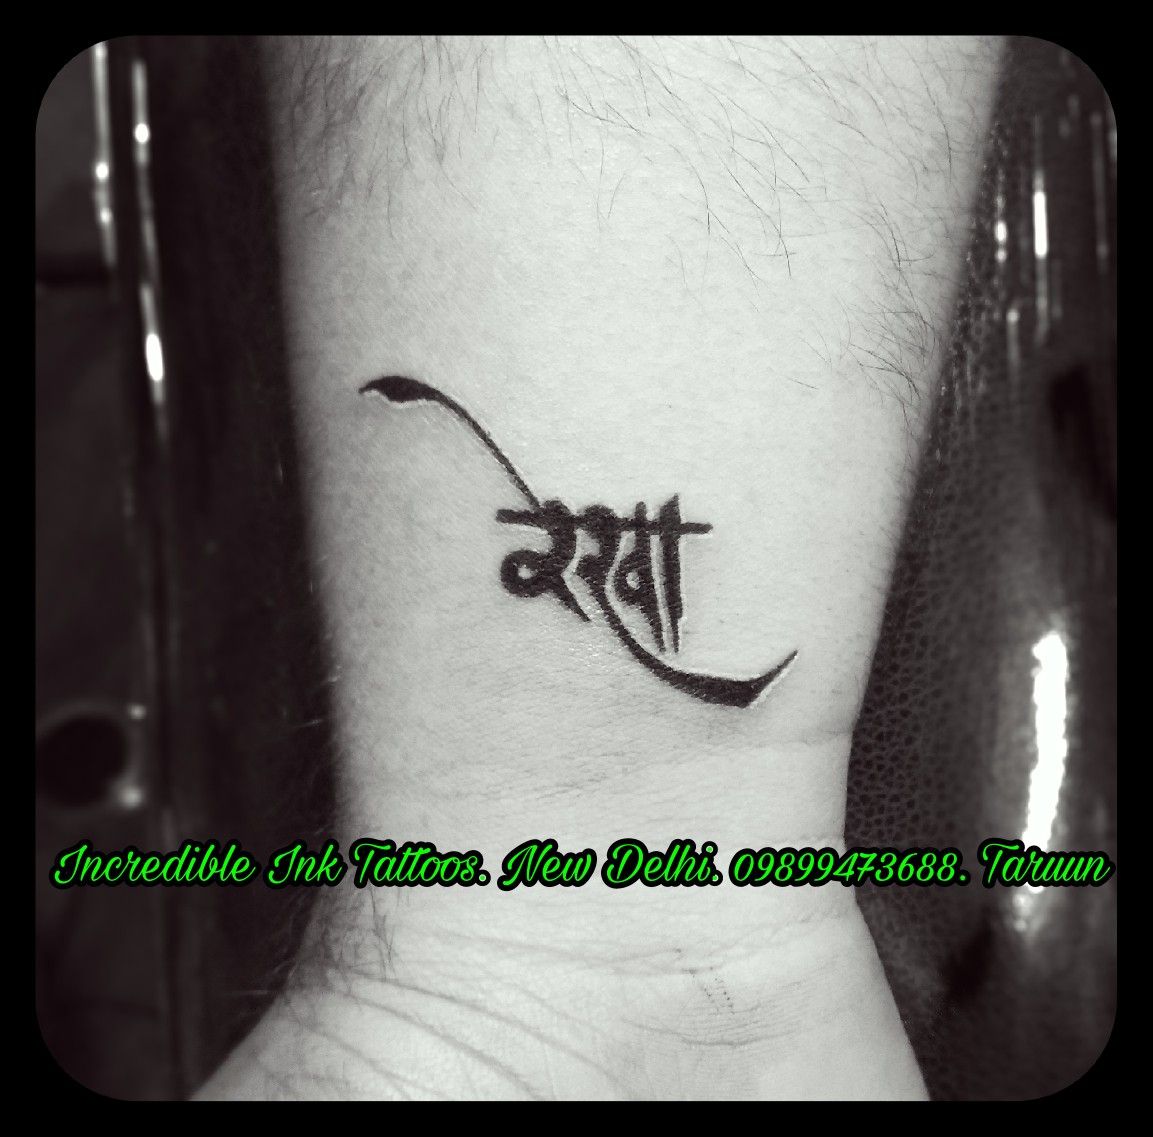 Rekha Name Tattoo Design - 1153x1137 Wallpaper 